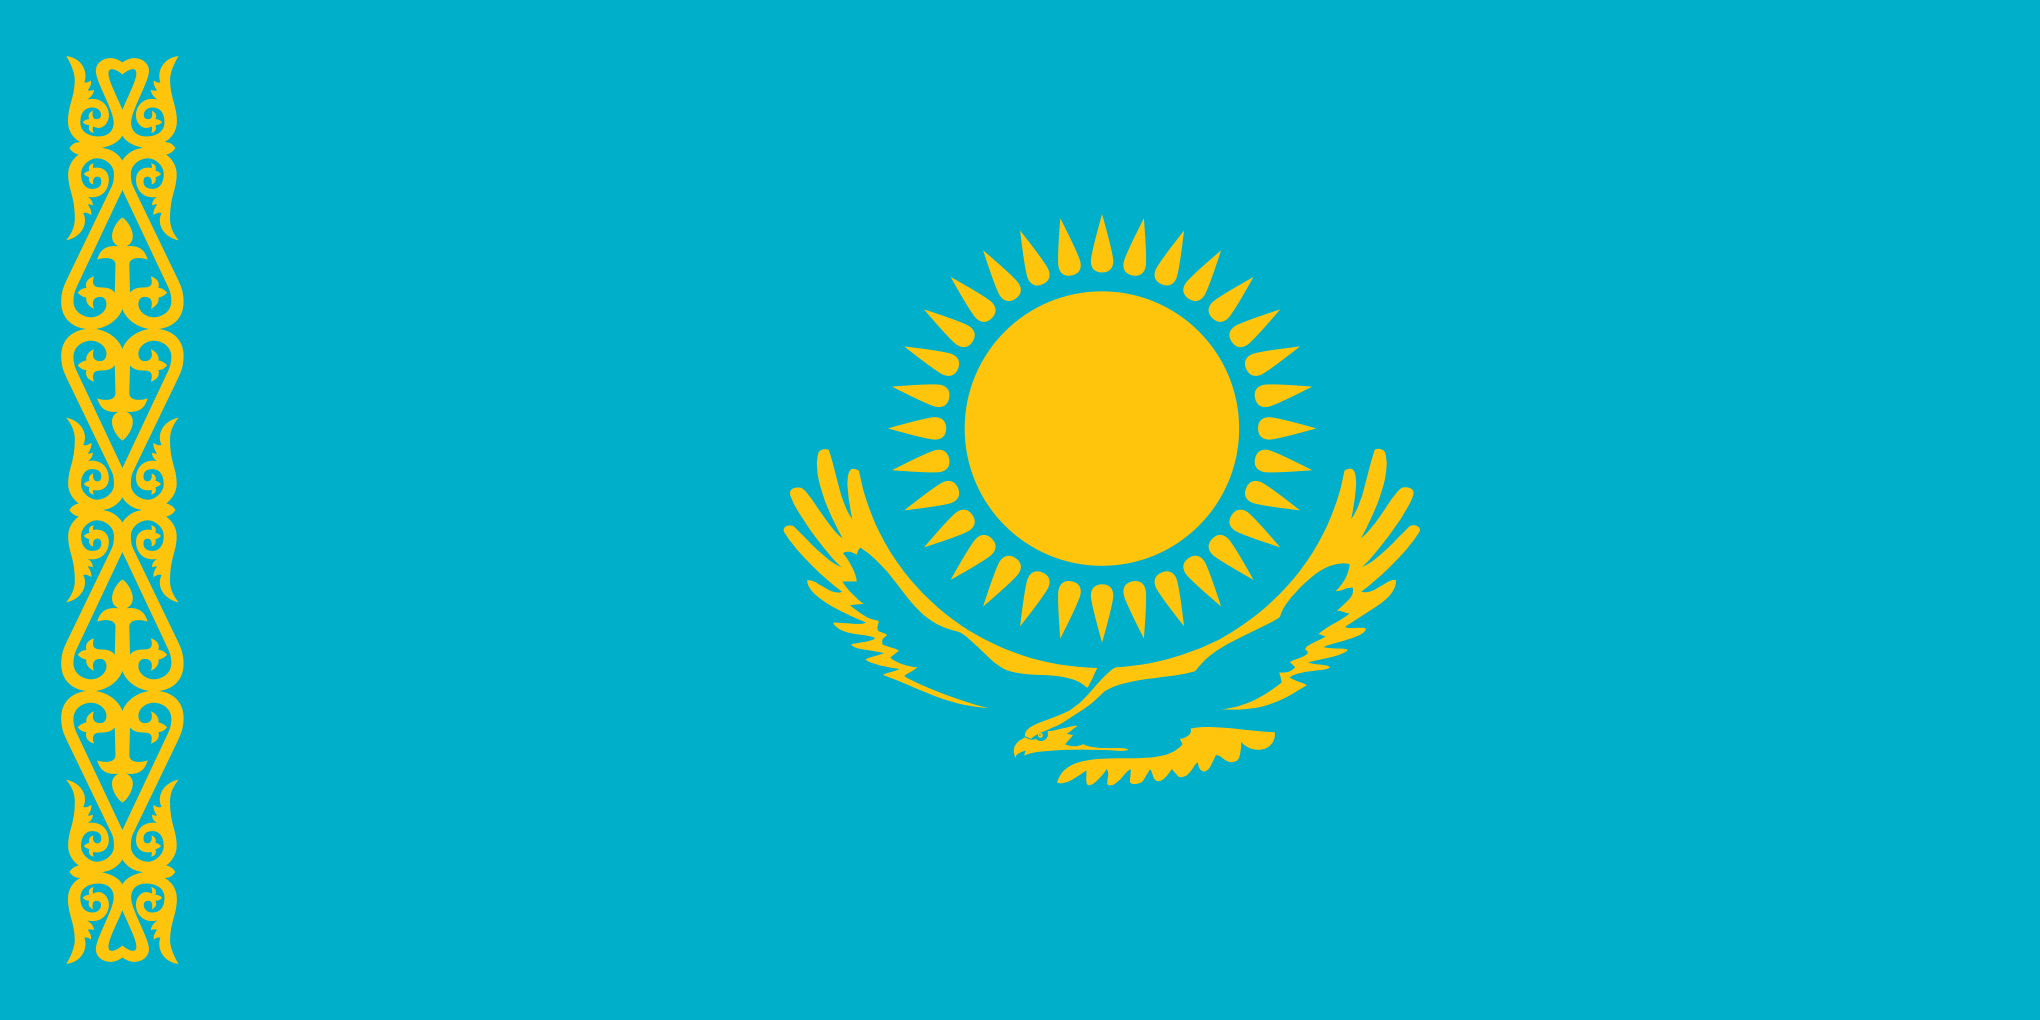 Bild der Staatsflagge Kasachstan - mit einer Auflösung von 2040x1020 - Zentralasien